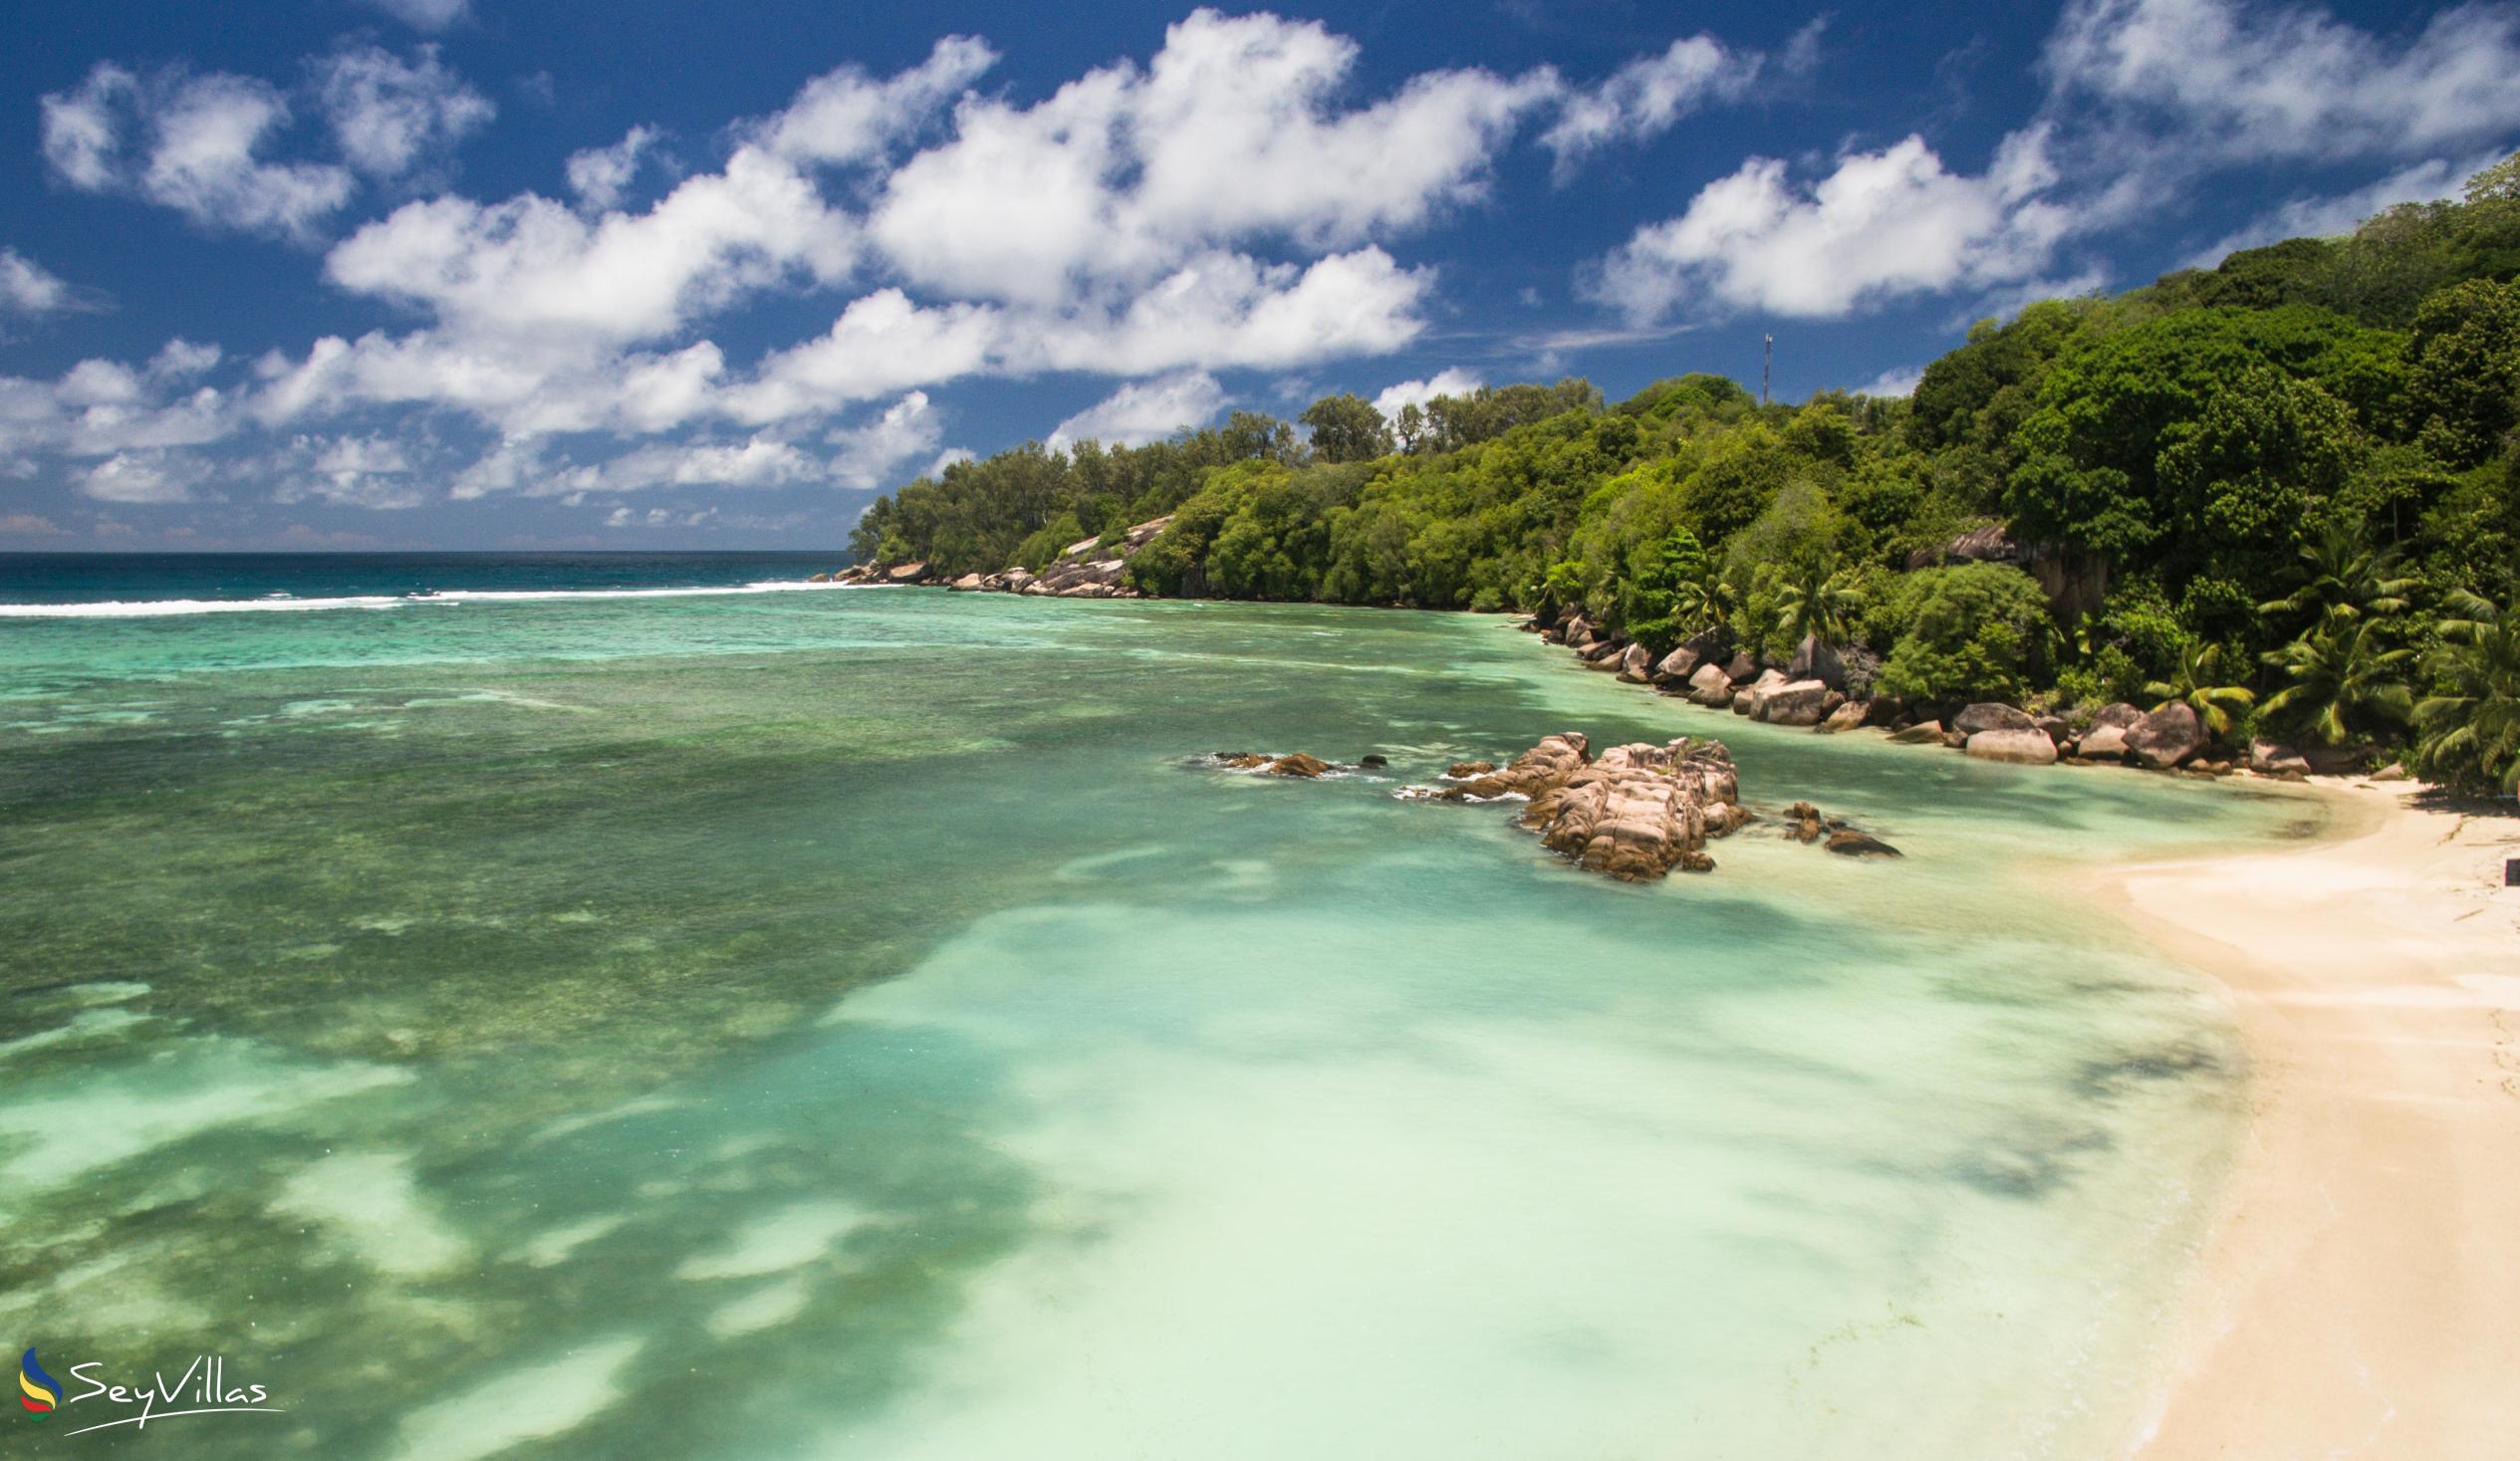 Photo 41: Crown Beach Hotel - Location - Mahé (Seychelles)